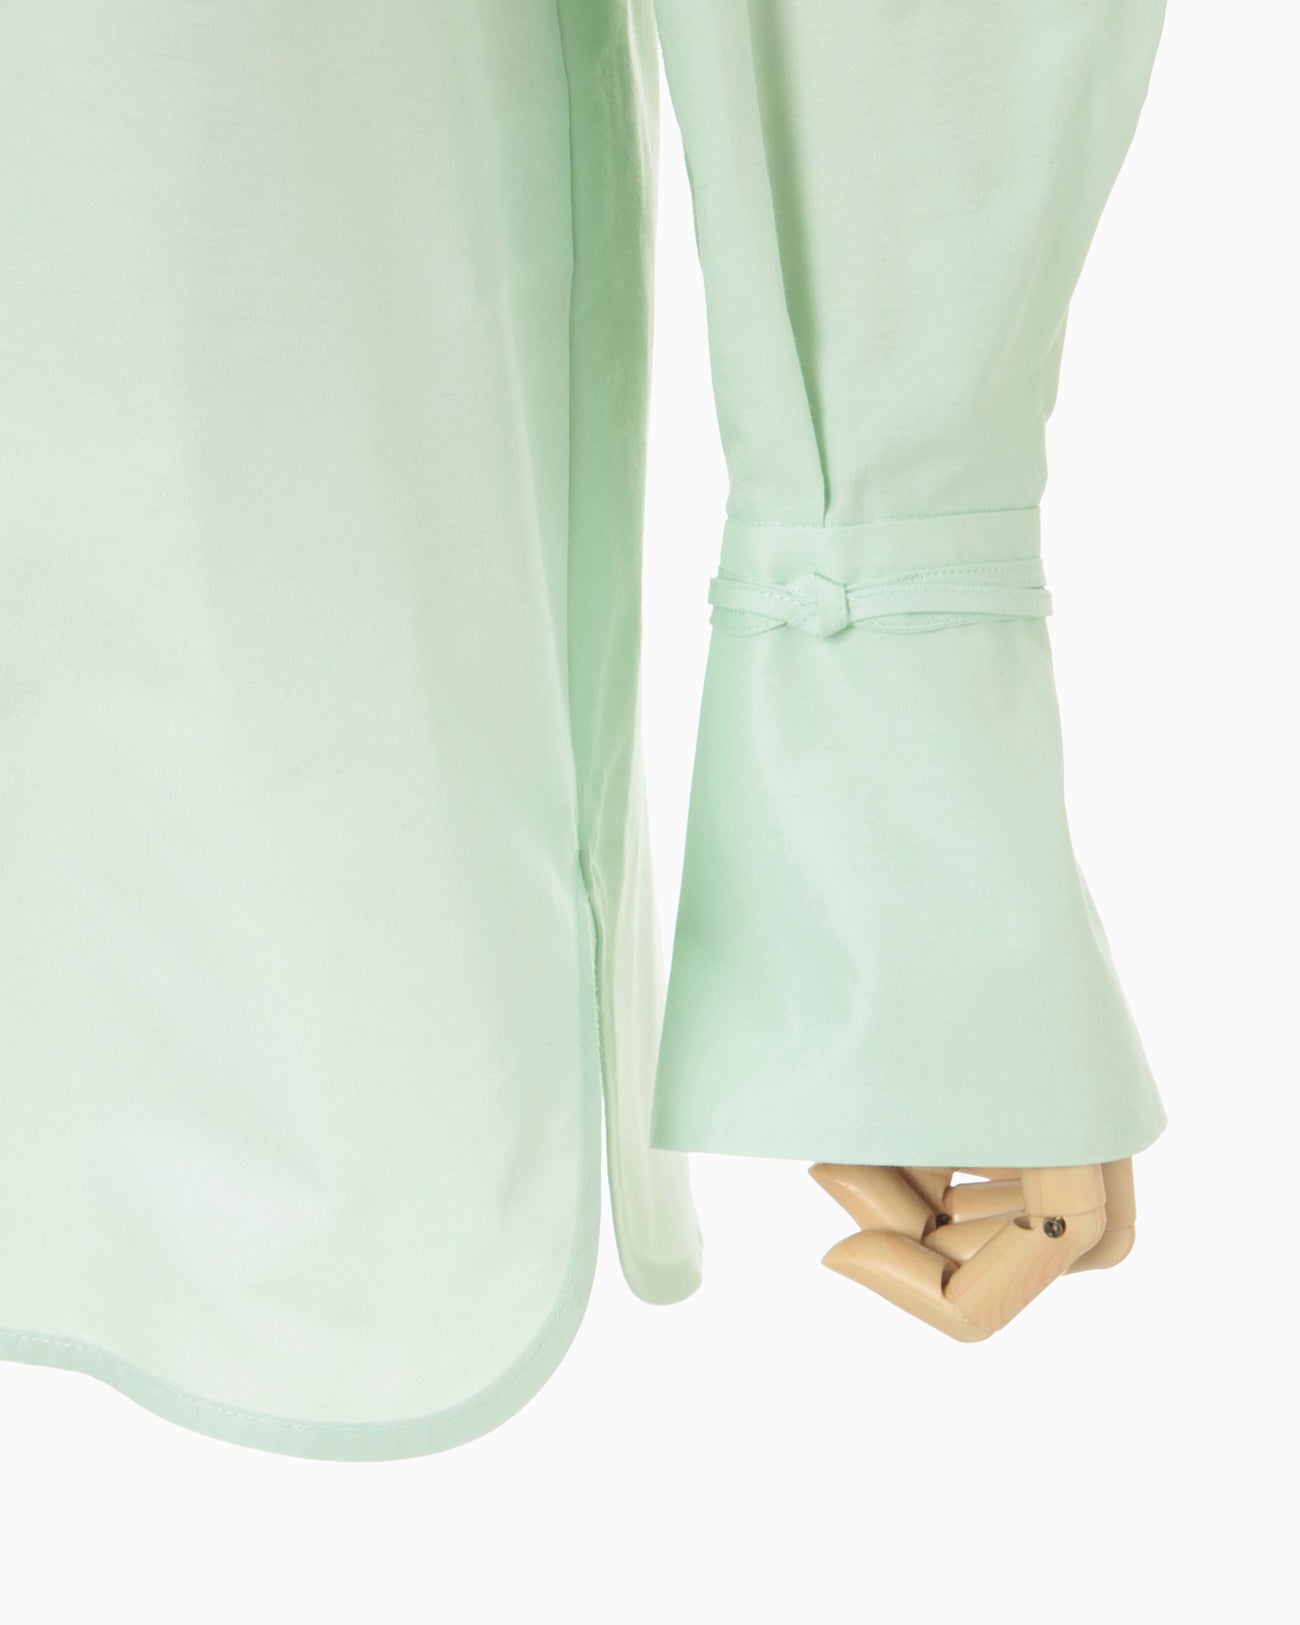 Cotton Silk Broad Basket Motif Shirt - mint green